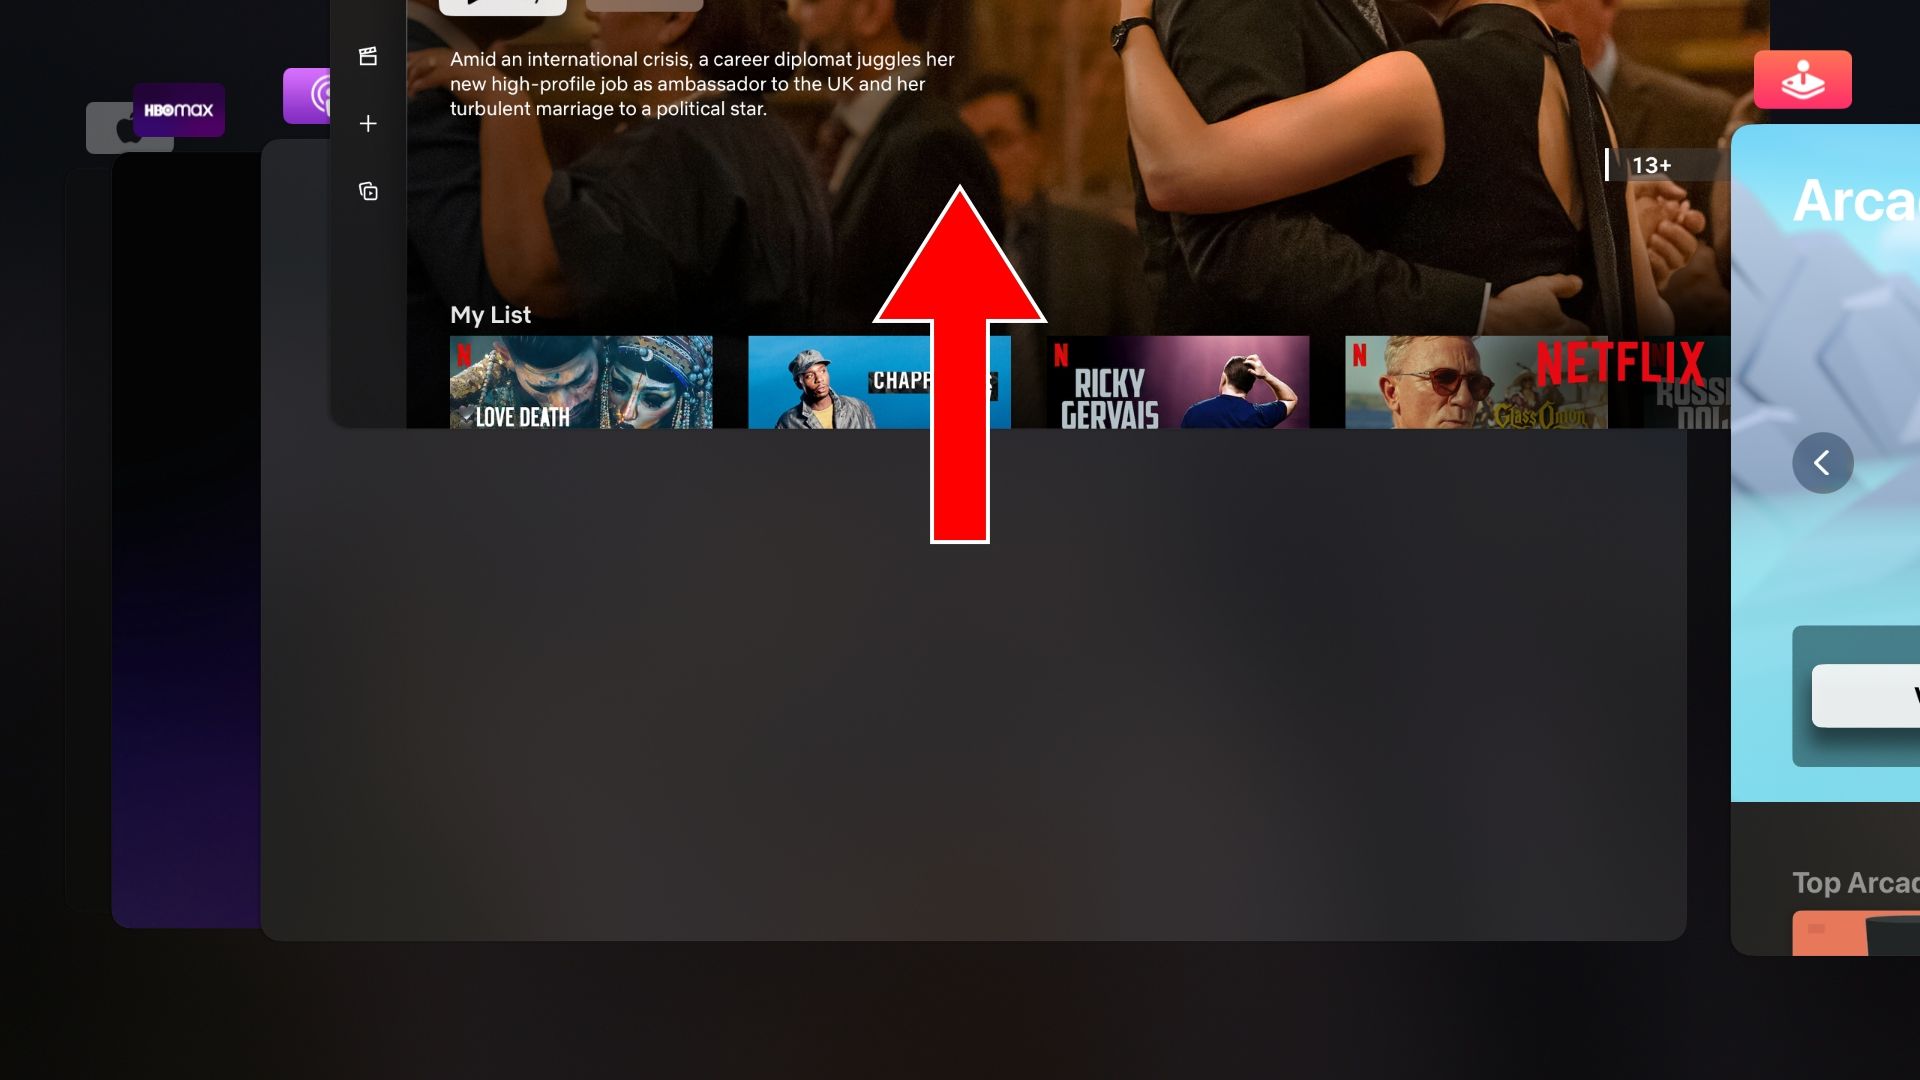 Captura de tela da Apple TV mostrando encerramento forçado do aplicativo Netflix no alternador de aplicativos tvOS